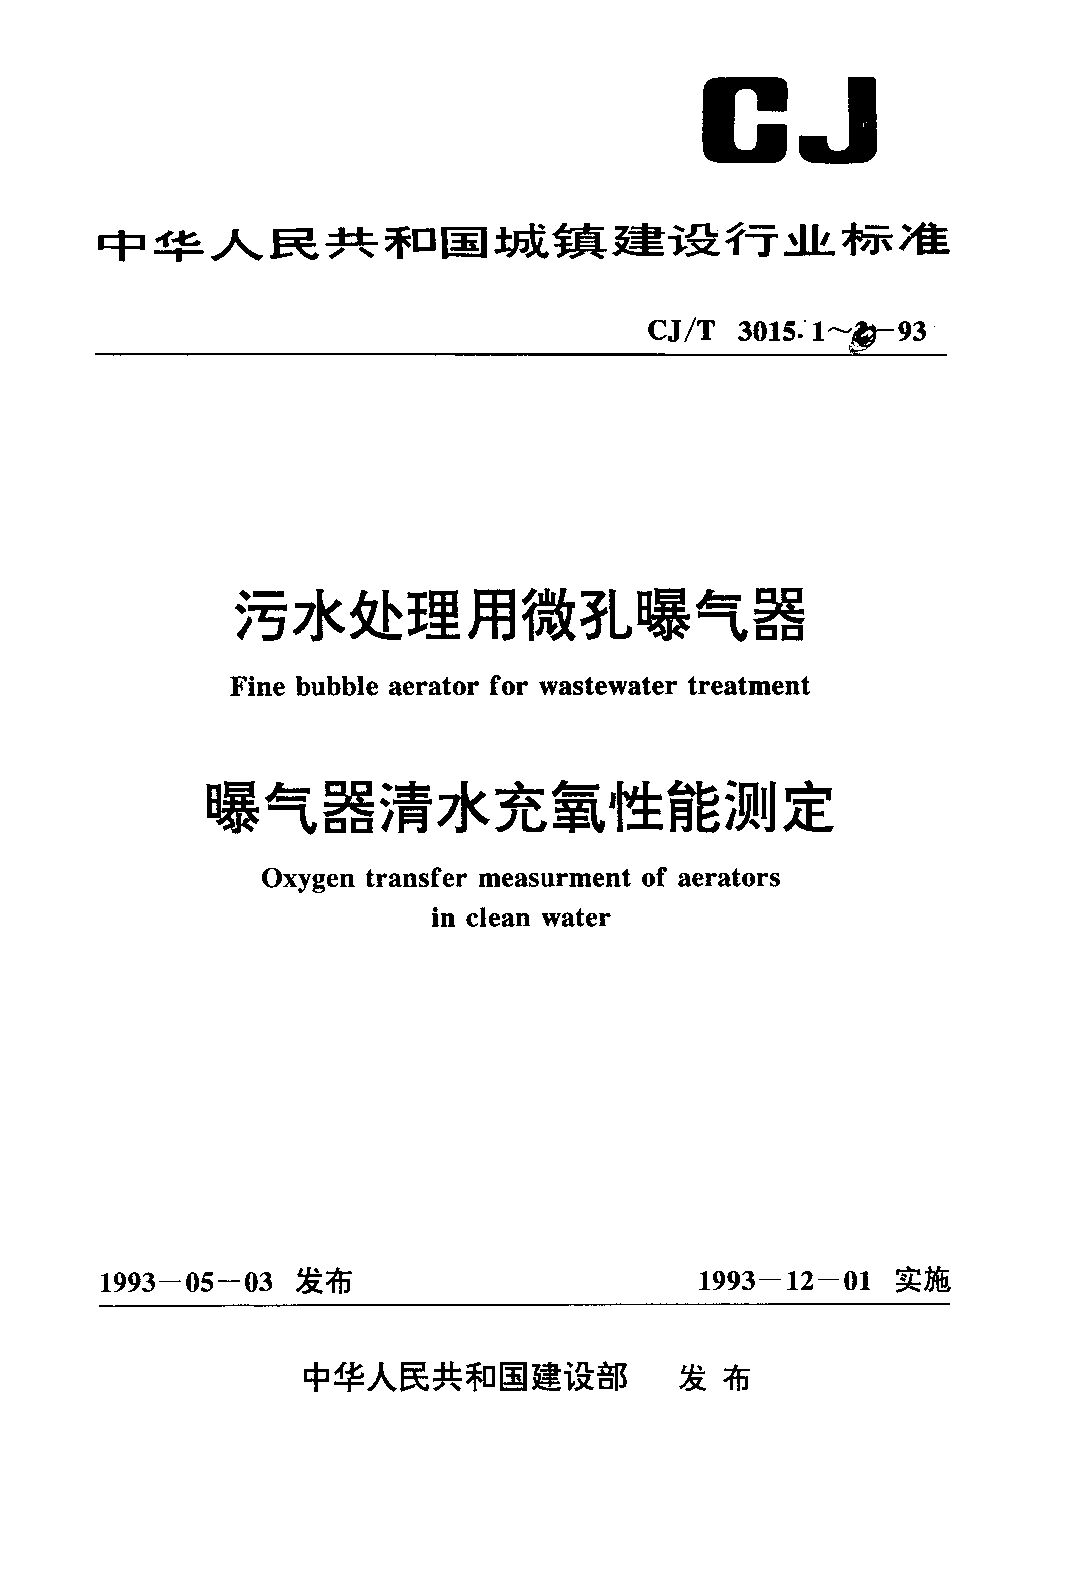 CJ/T 3015.1-1993